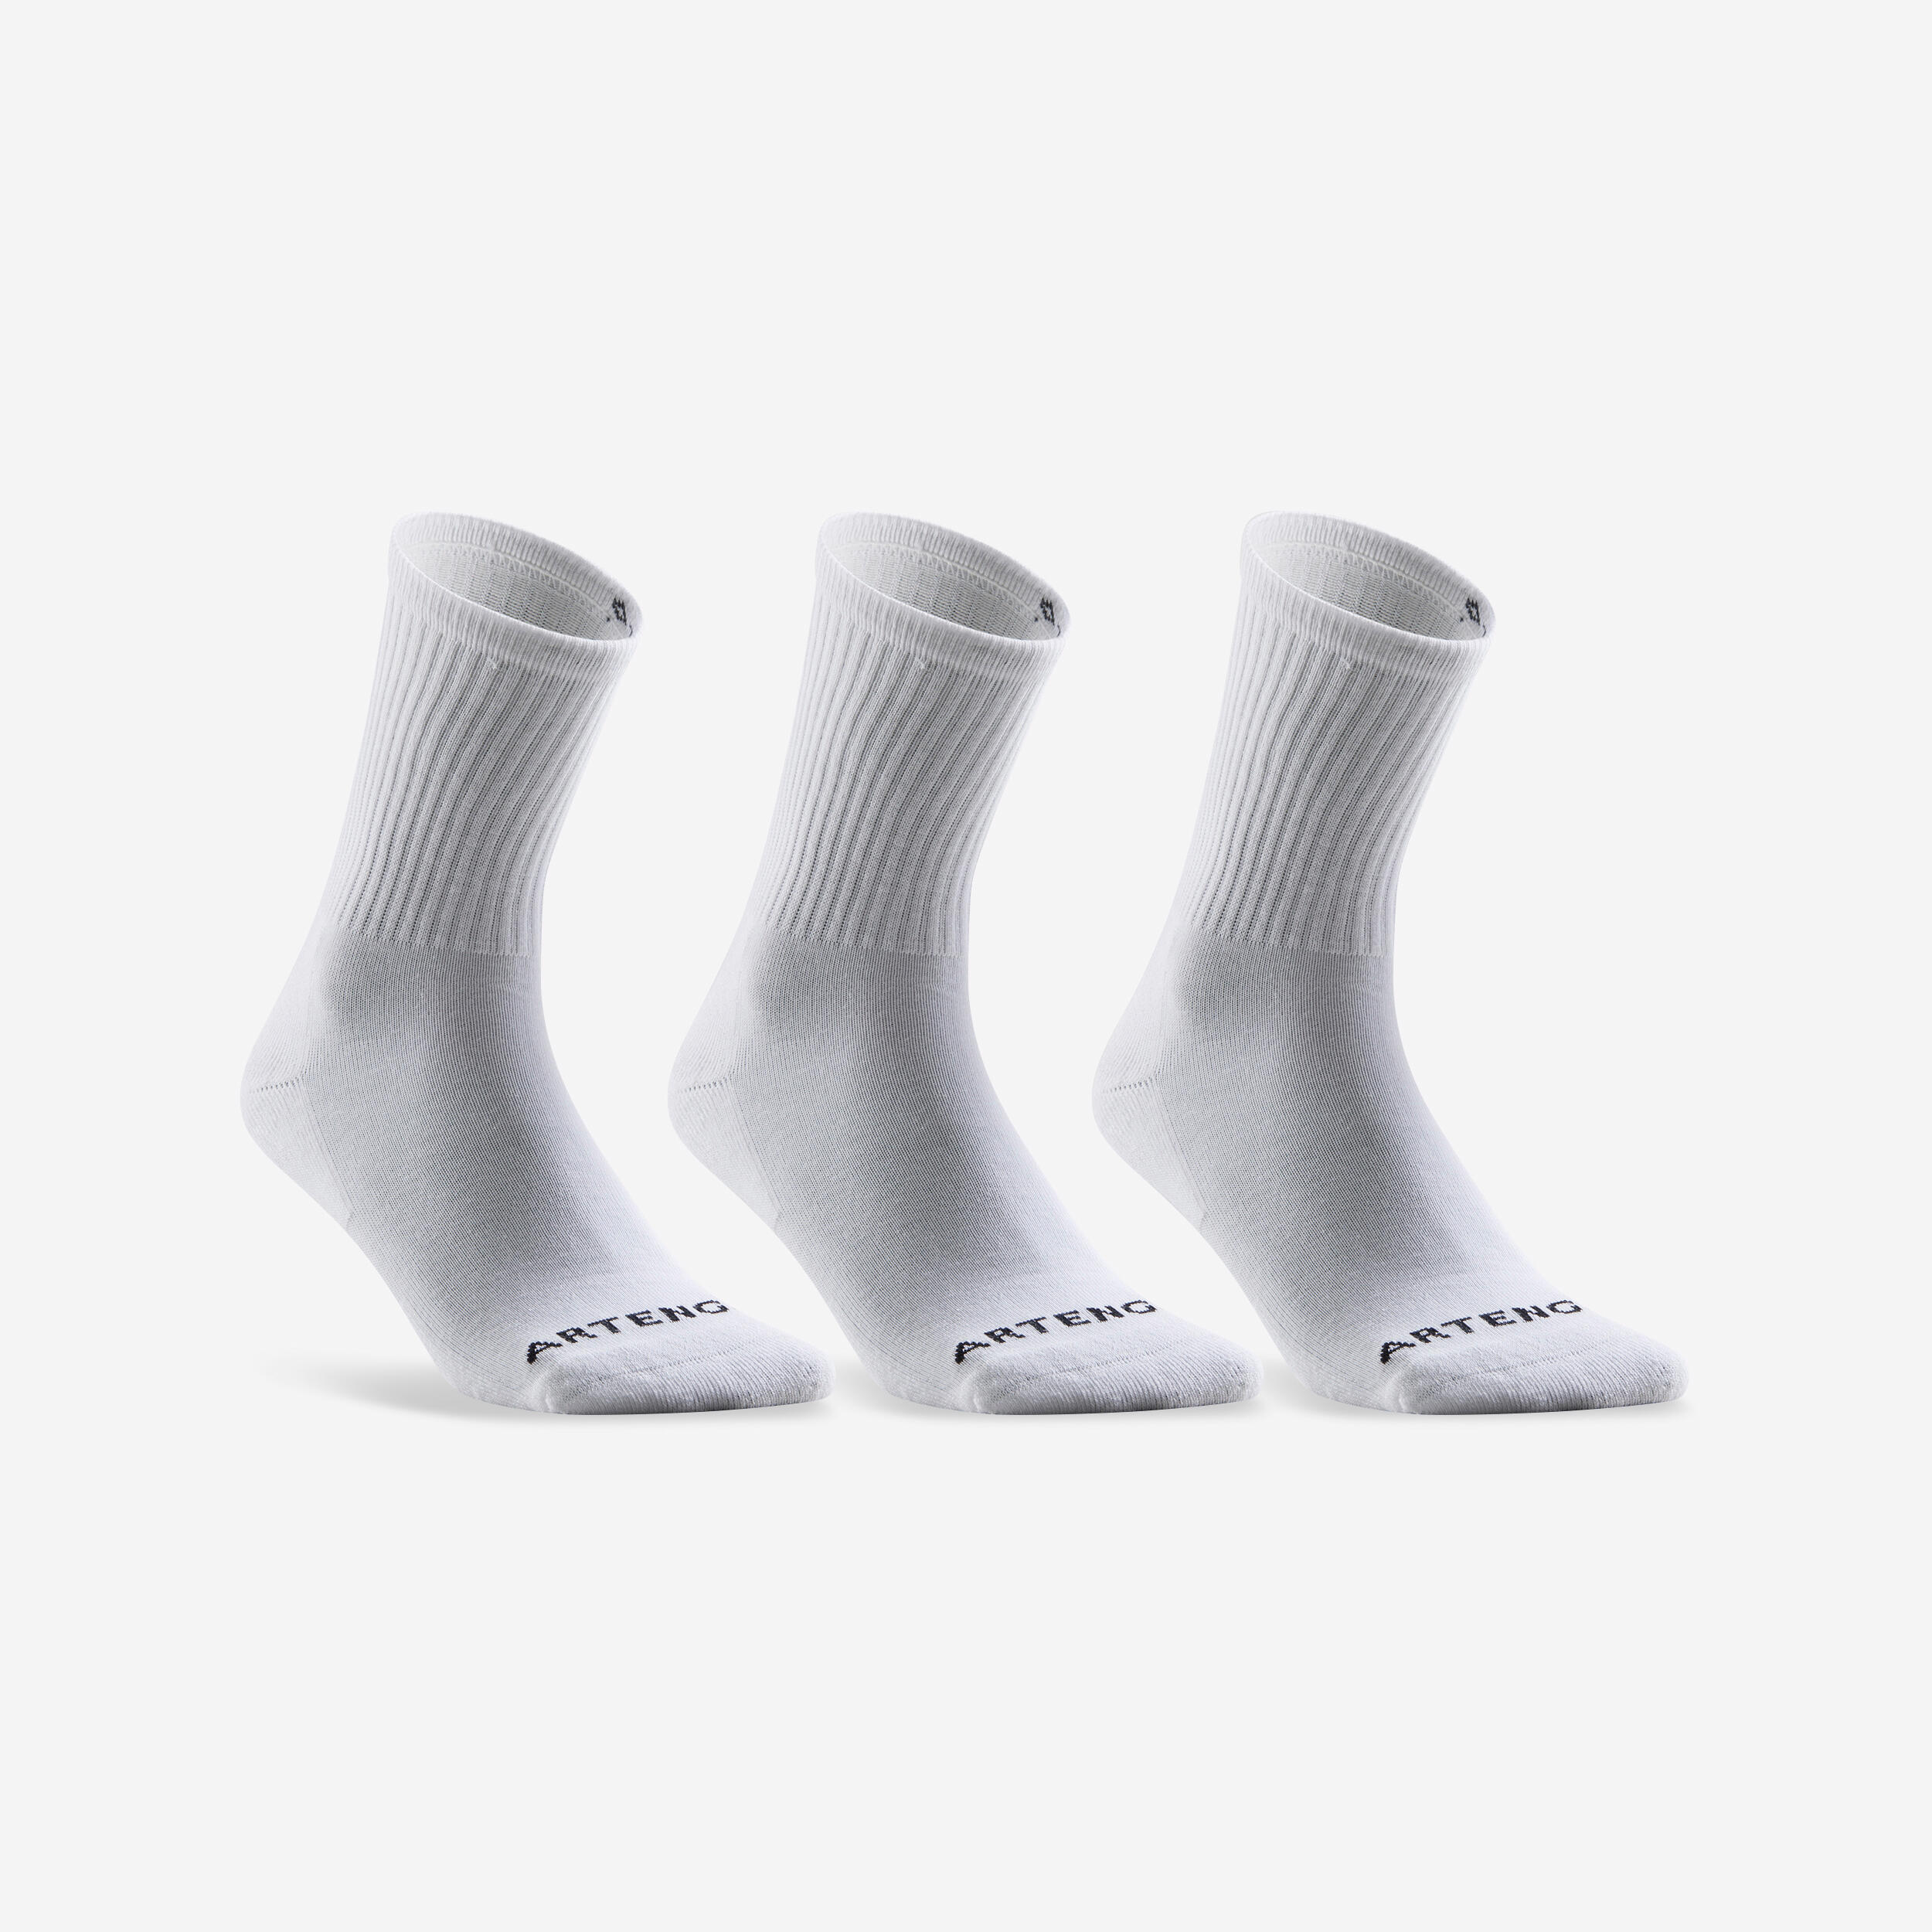 Vysoké tenisové ponožky RS100 bílé 3 páry